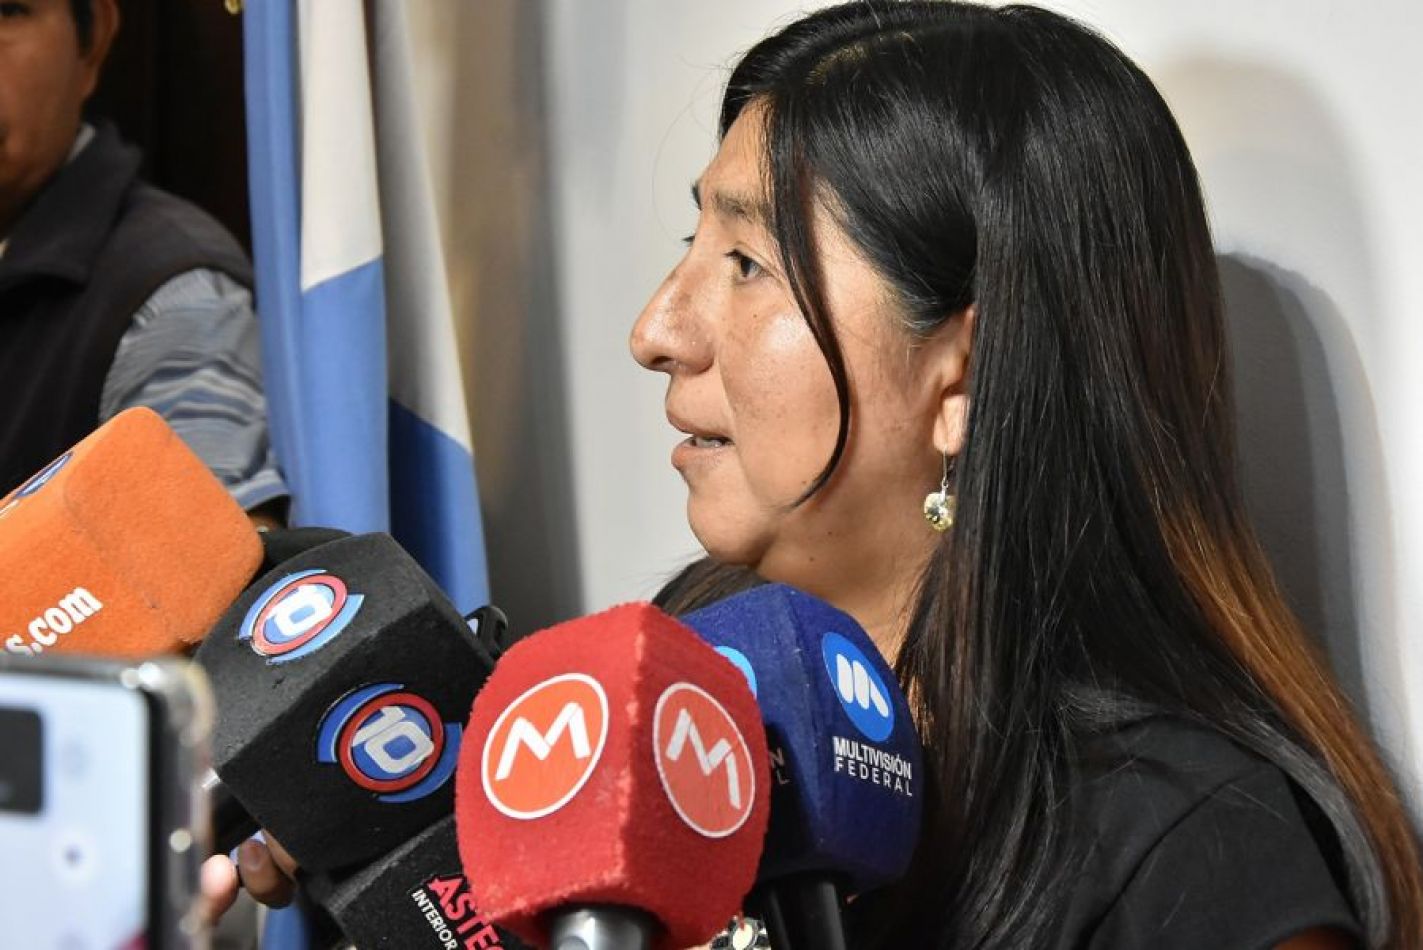 La ministra Vargas informó sobre le balance de su gestión en el Ministerio de Desarrollo Social